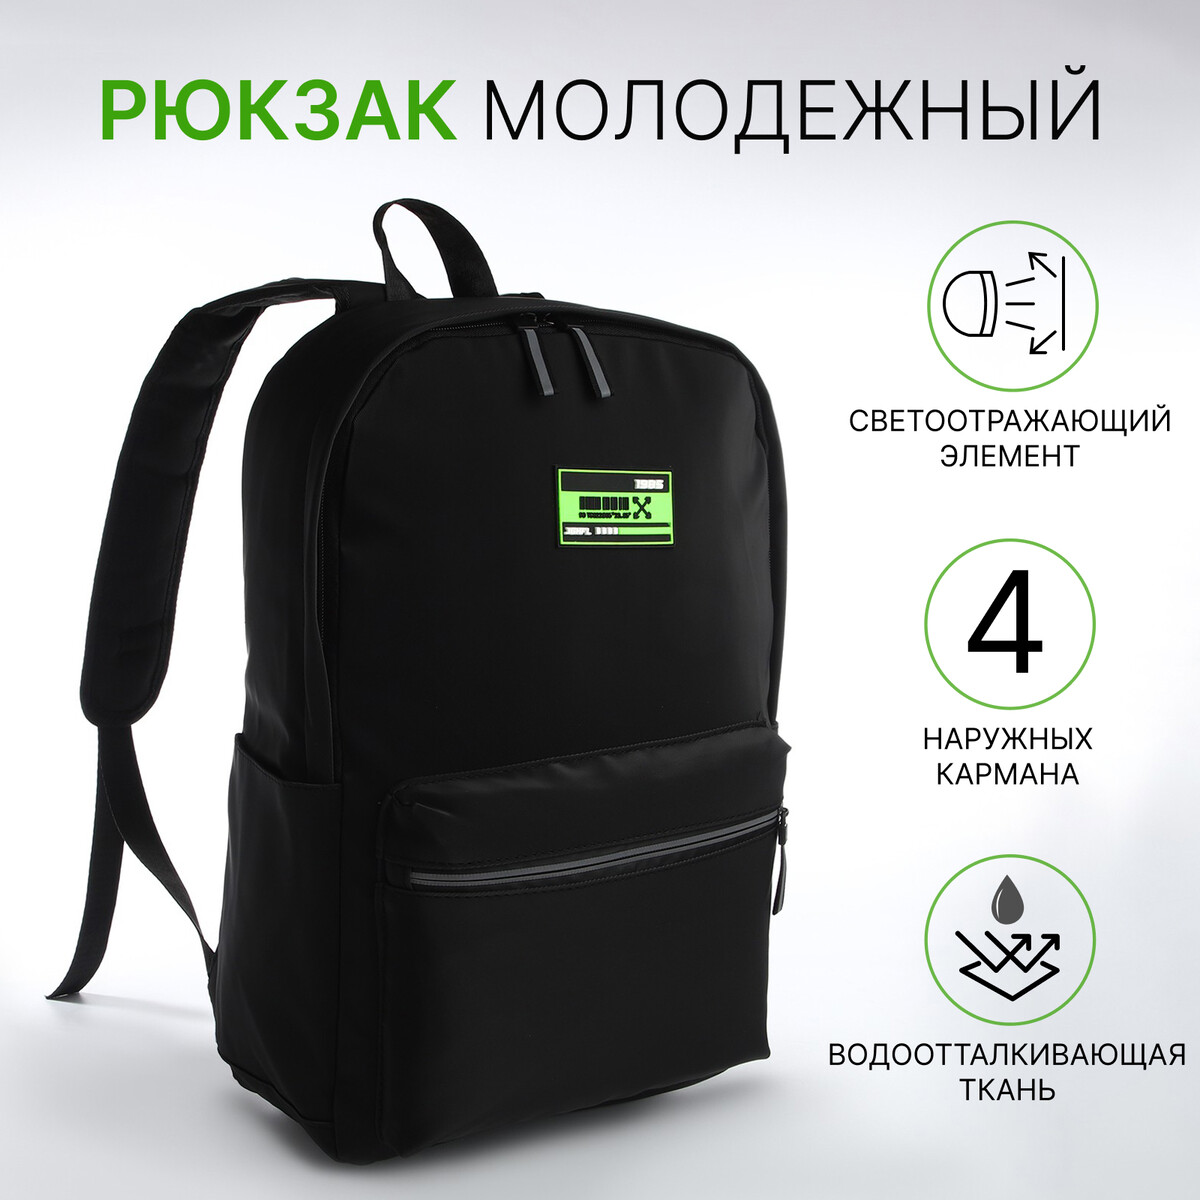 Рюкзак молодежный из текстиля на молнии, 2 кармана, цвет черный/зеленый рюкзак молодежный из текстиля на молнии 4 кармана зеленый